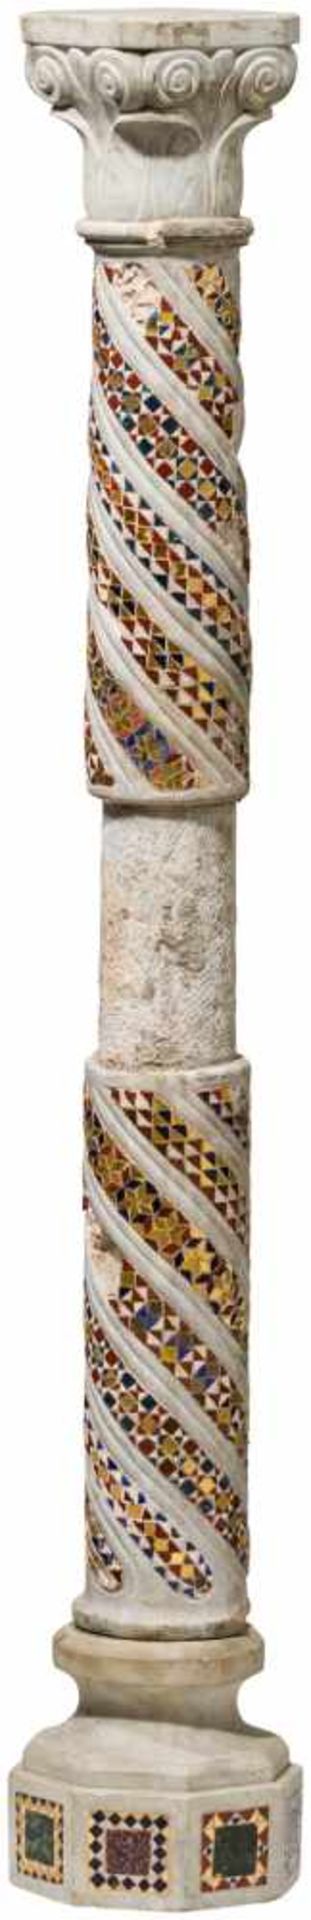 Mosaiksäule, Italien, 18. Jhdt.Leicht gemaserter Marmor. Säule mit Kompositkapitell, spiralig - Bild 2 aus 4